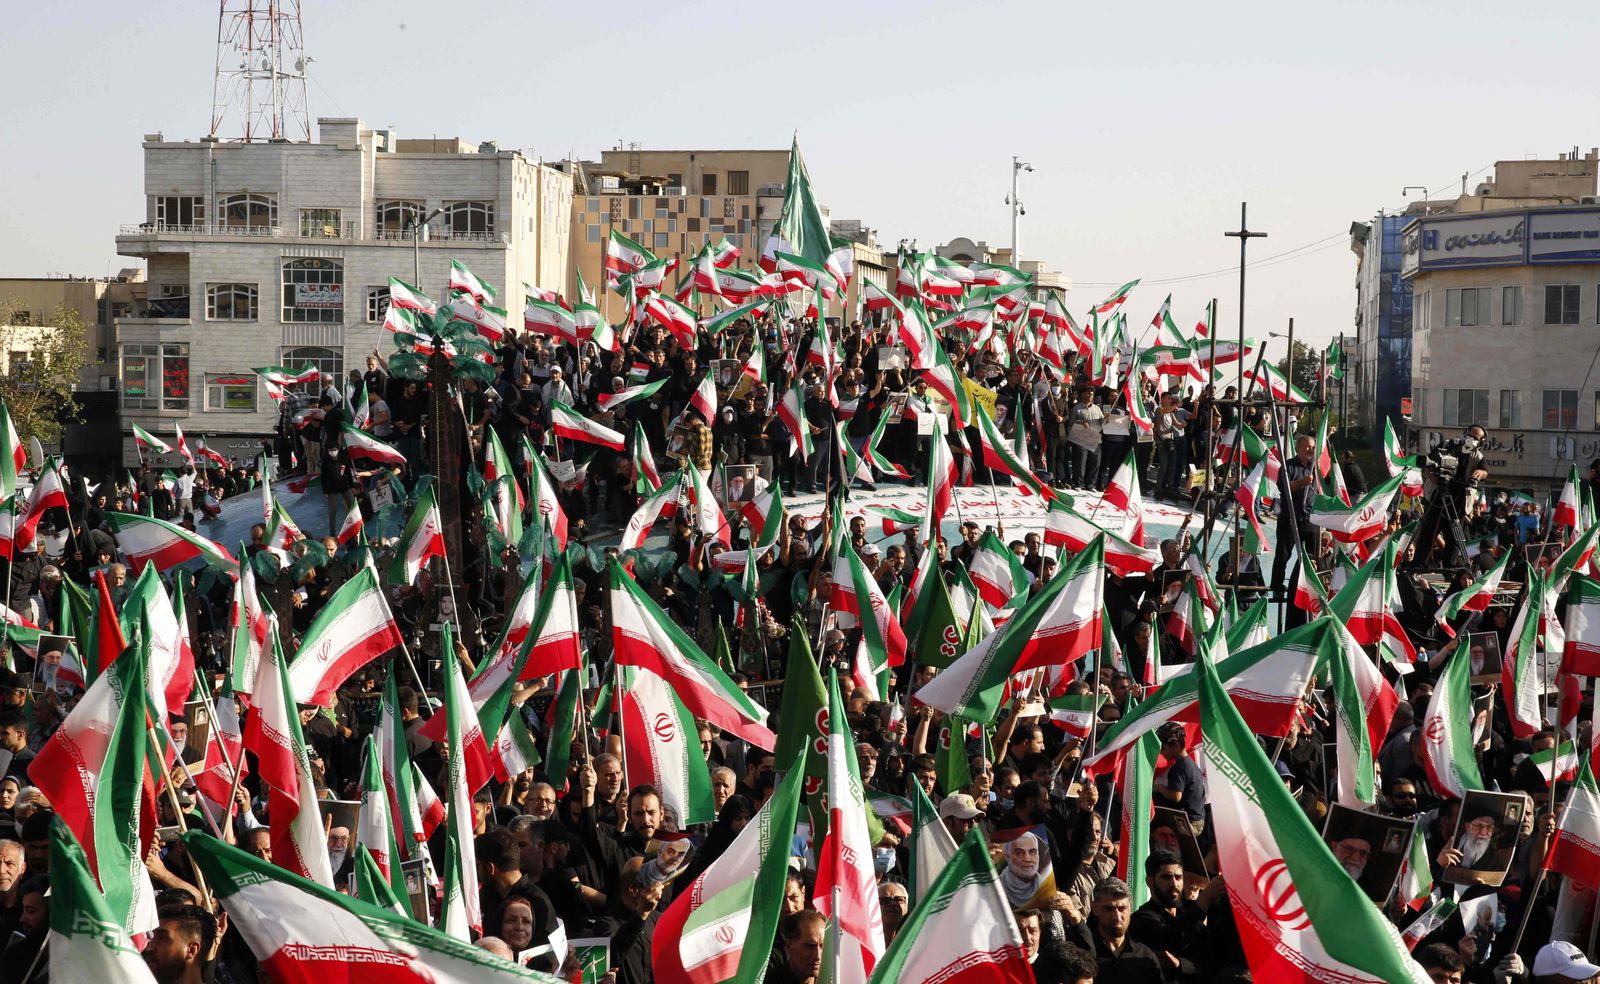 متظاهرون إيرانيون موالون للحكومة يلوحون بأعلامهم الوطنية خلال مسيرة ضد الاحتجاجات المناهضة للنظام في إيران، طهران - 25 سبتمبر 2022 - AFP